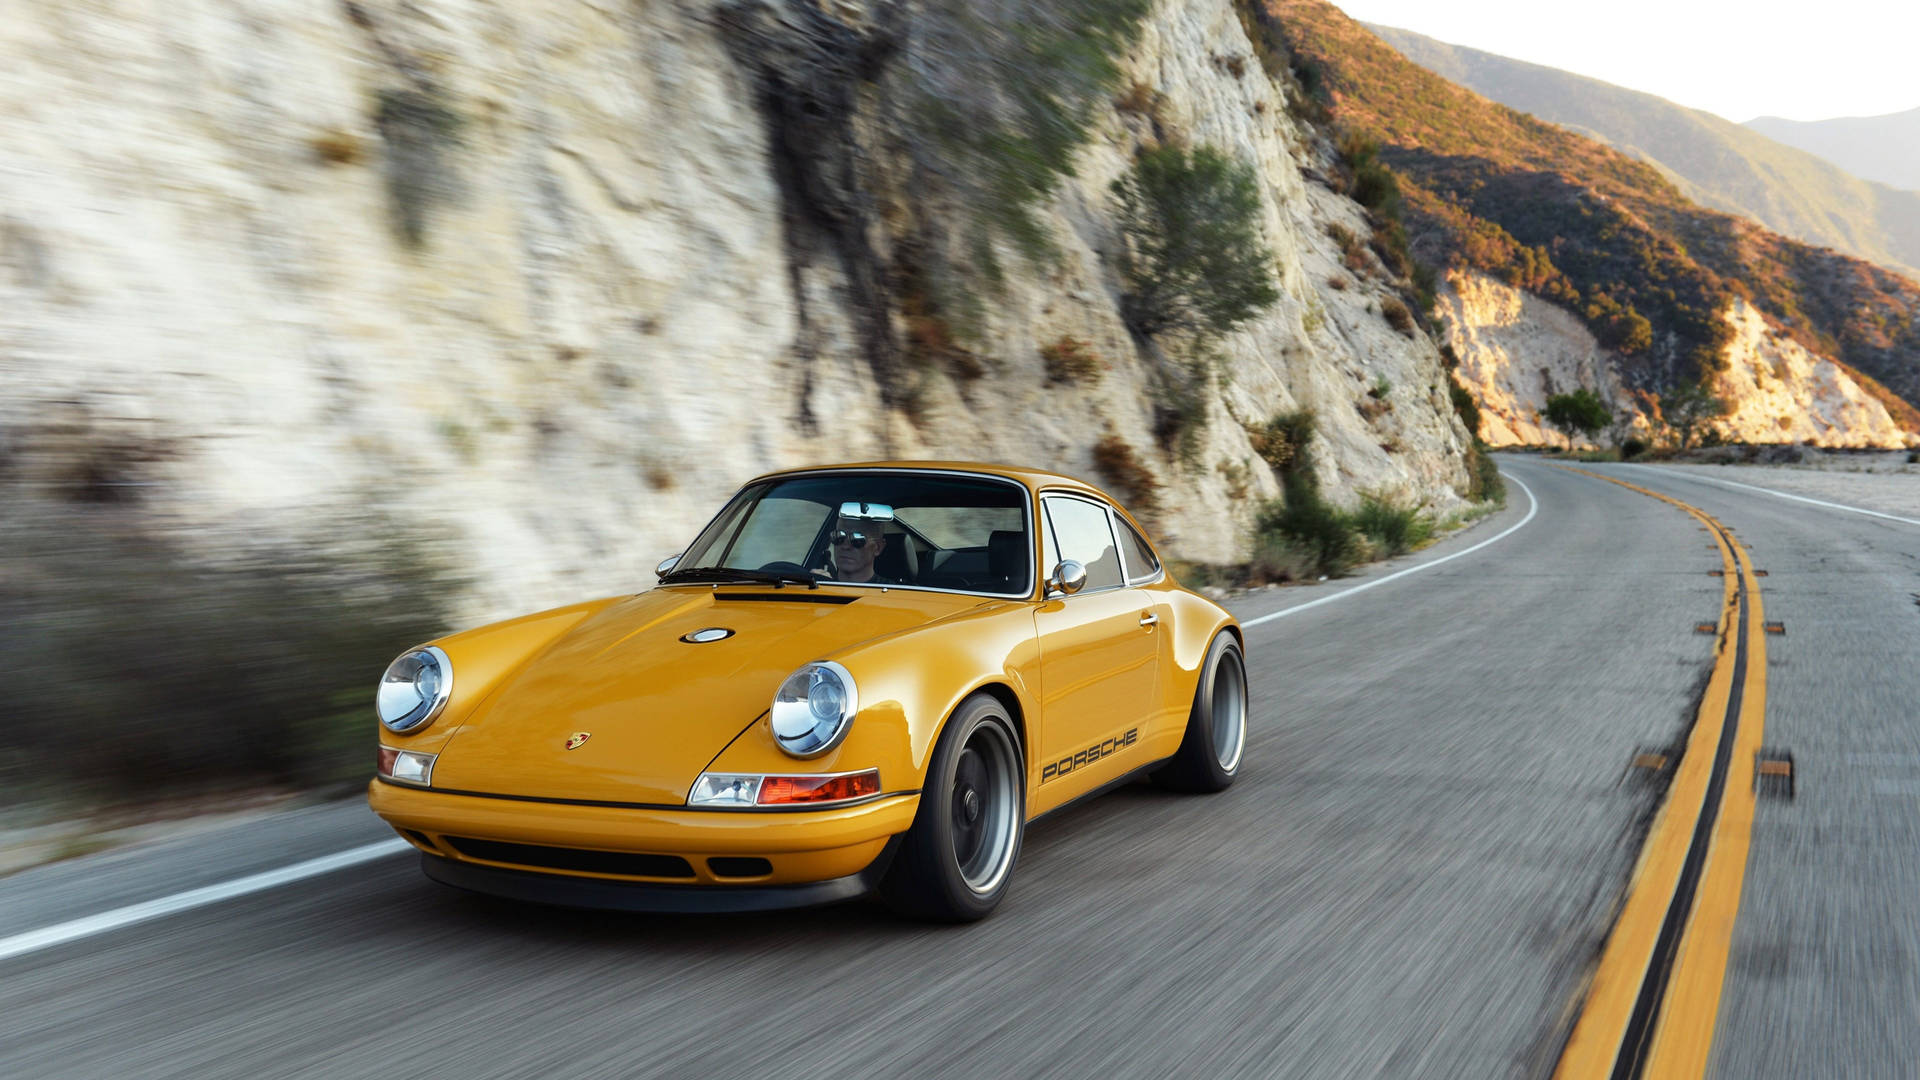 Sanger Porsche i bevægelse tapet: Udtryk din energiige selv med Porsche i bevægelse tapet. Wallpaper